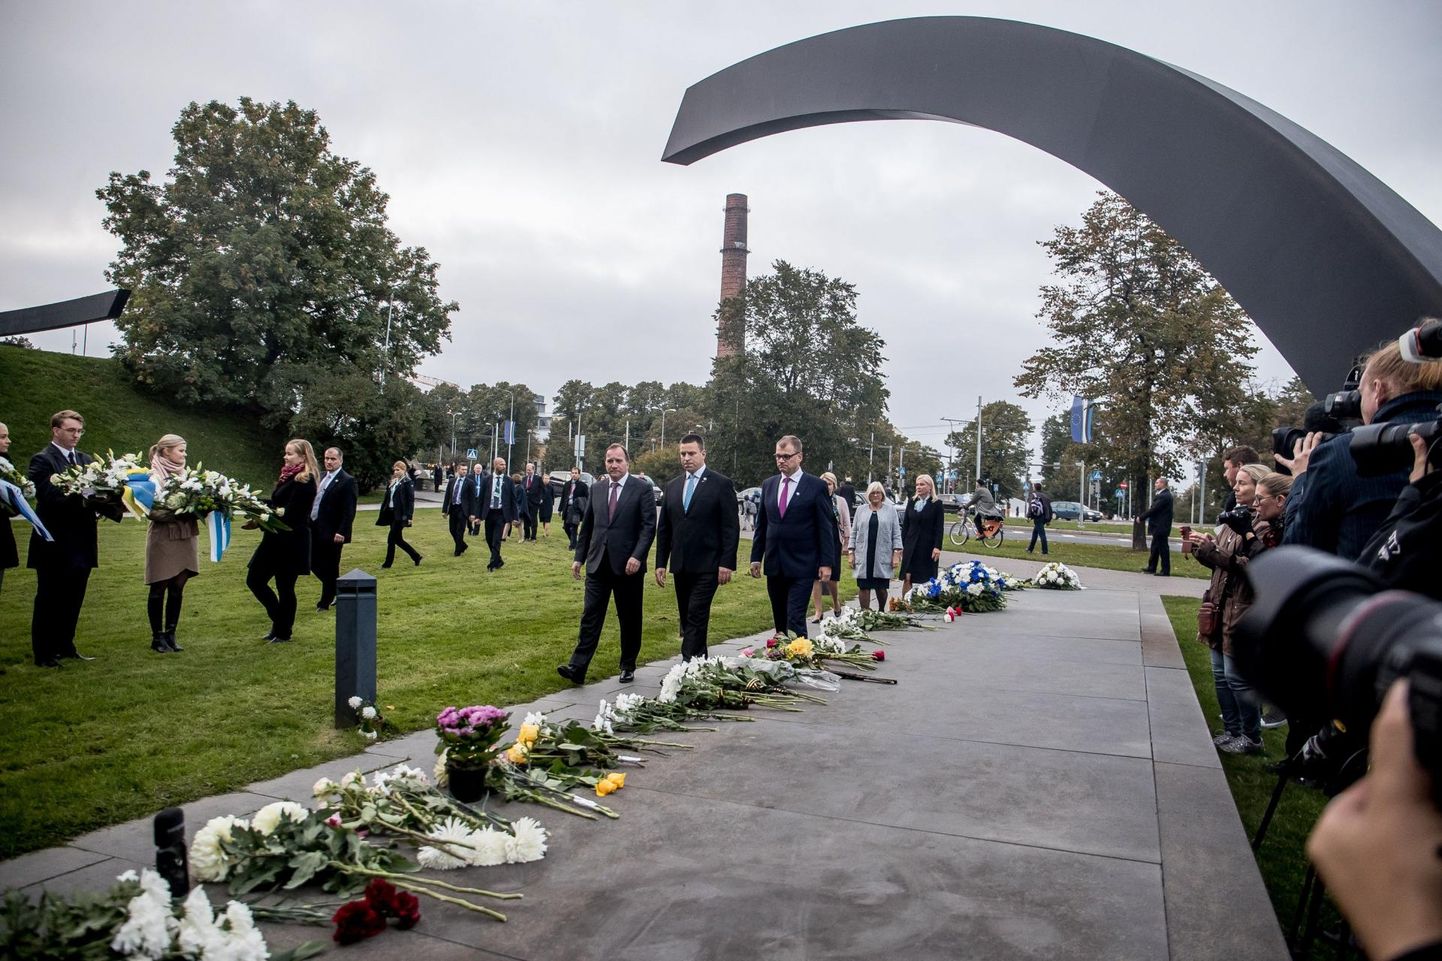 Estonial hukkunute mälestustseremoonia.